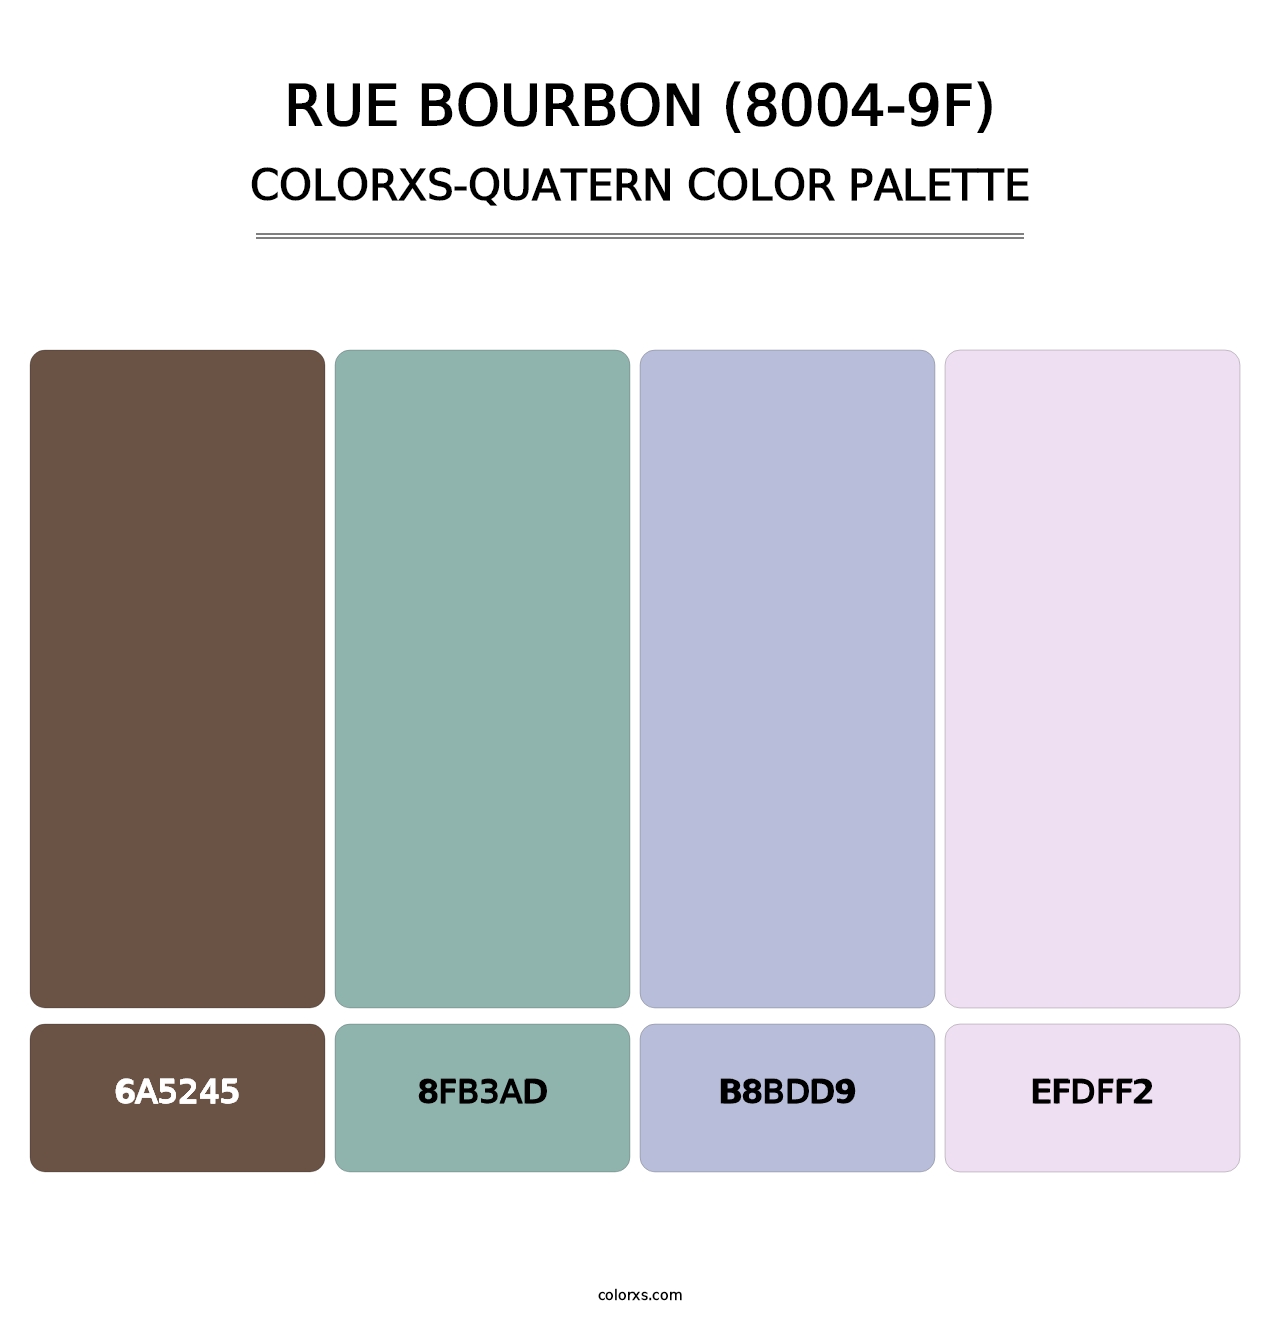 Rue Bourbon (8004-9F) - Colorxs Quatern Palette